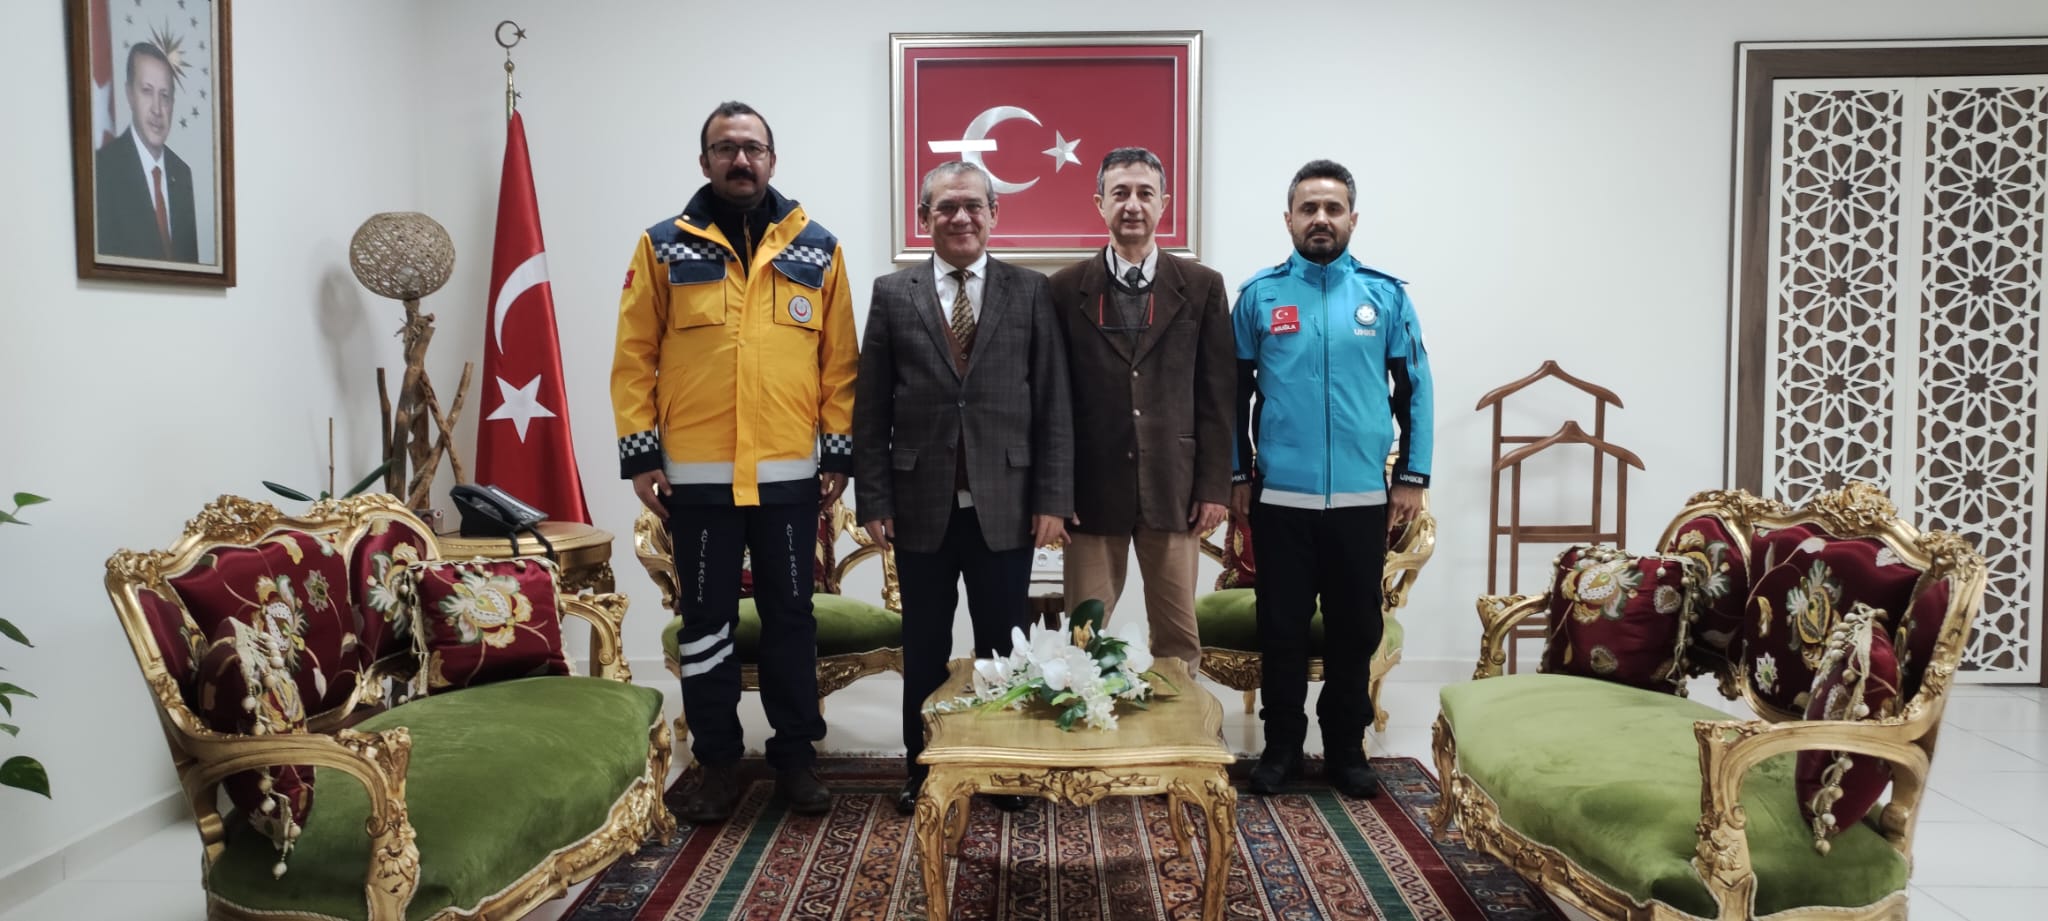 1-7 Aralık Acil Sağlık Haftası kapsamında, 112 Başhekimi Dr. Halil İbrahim DEMİRCAN, UMKE çalışanlarıyla birlikte Sayın Kaymakamımızı makamında ziyaret ettiler.